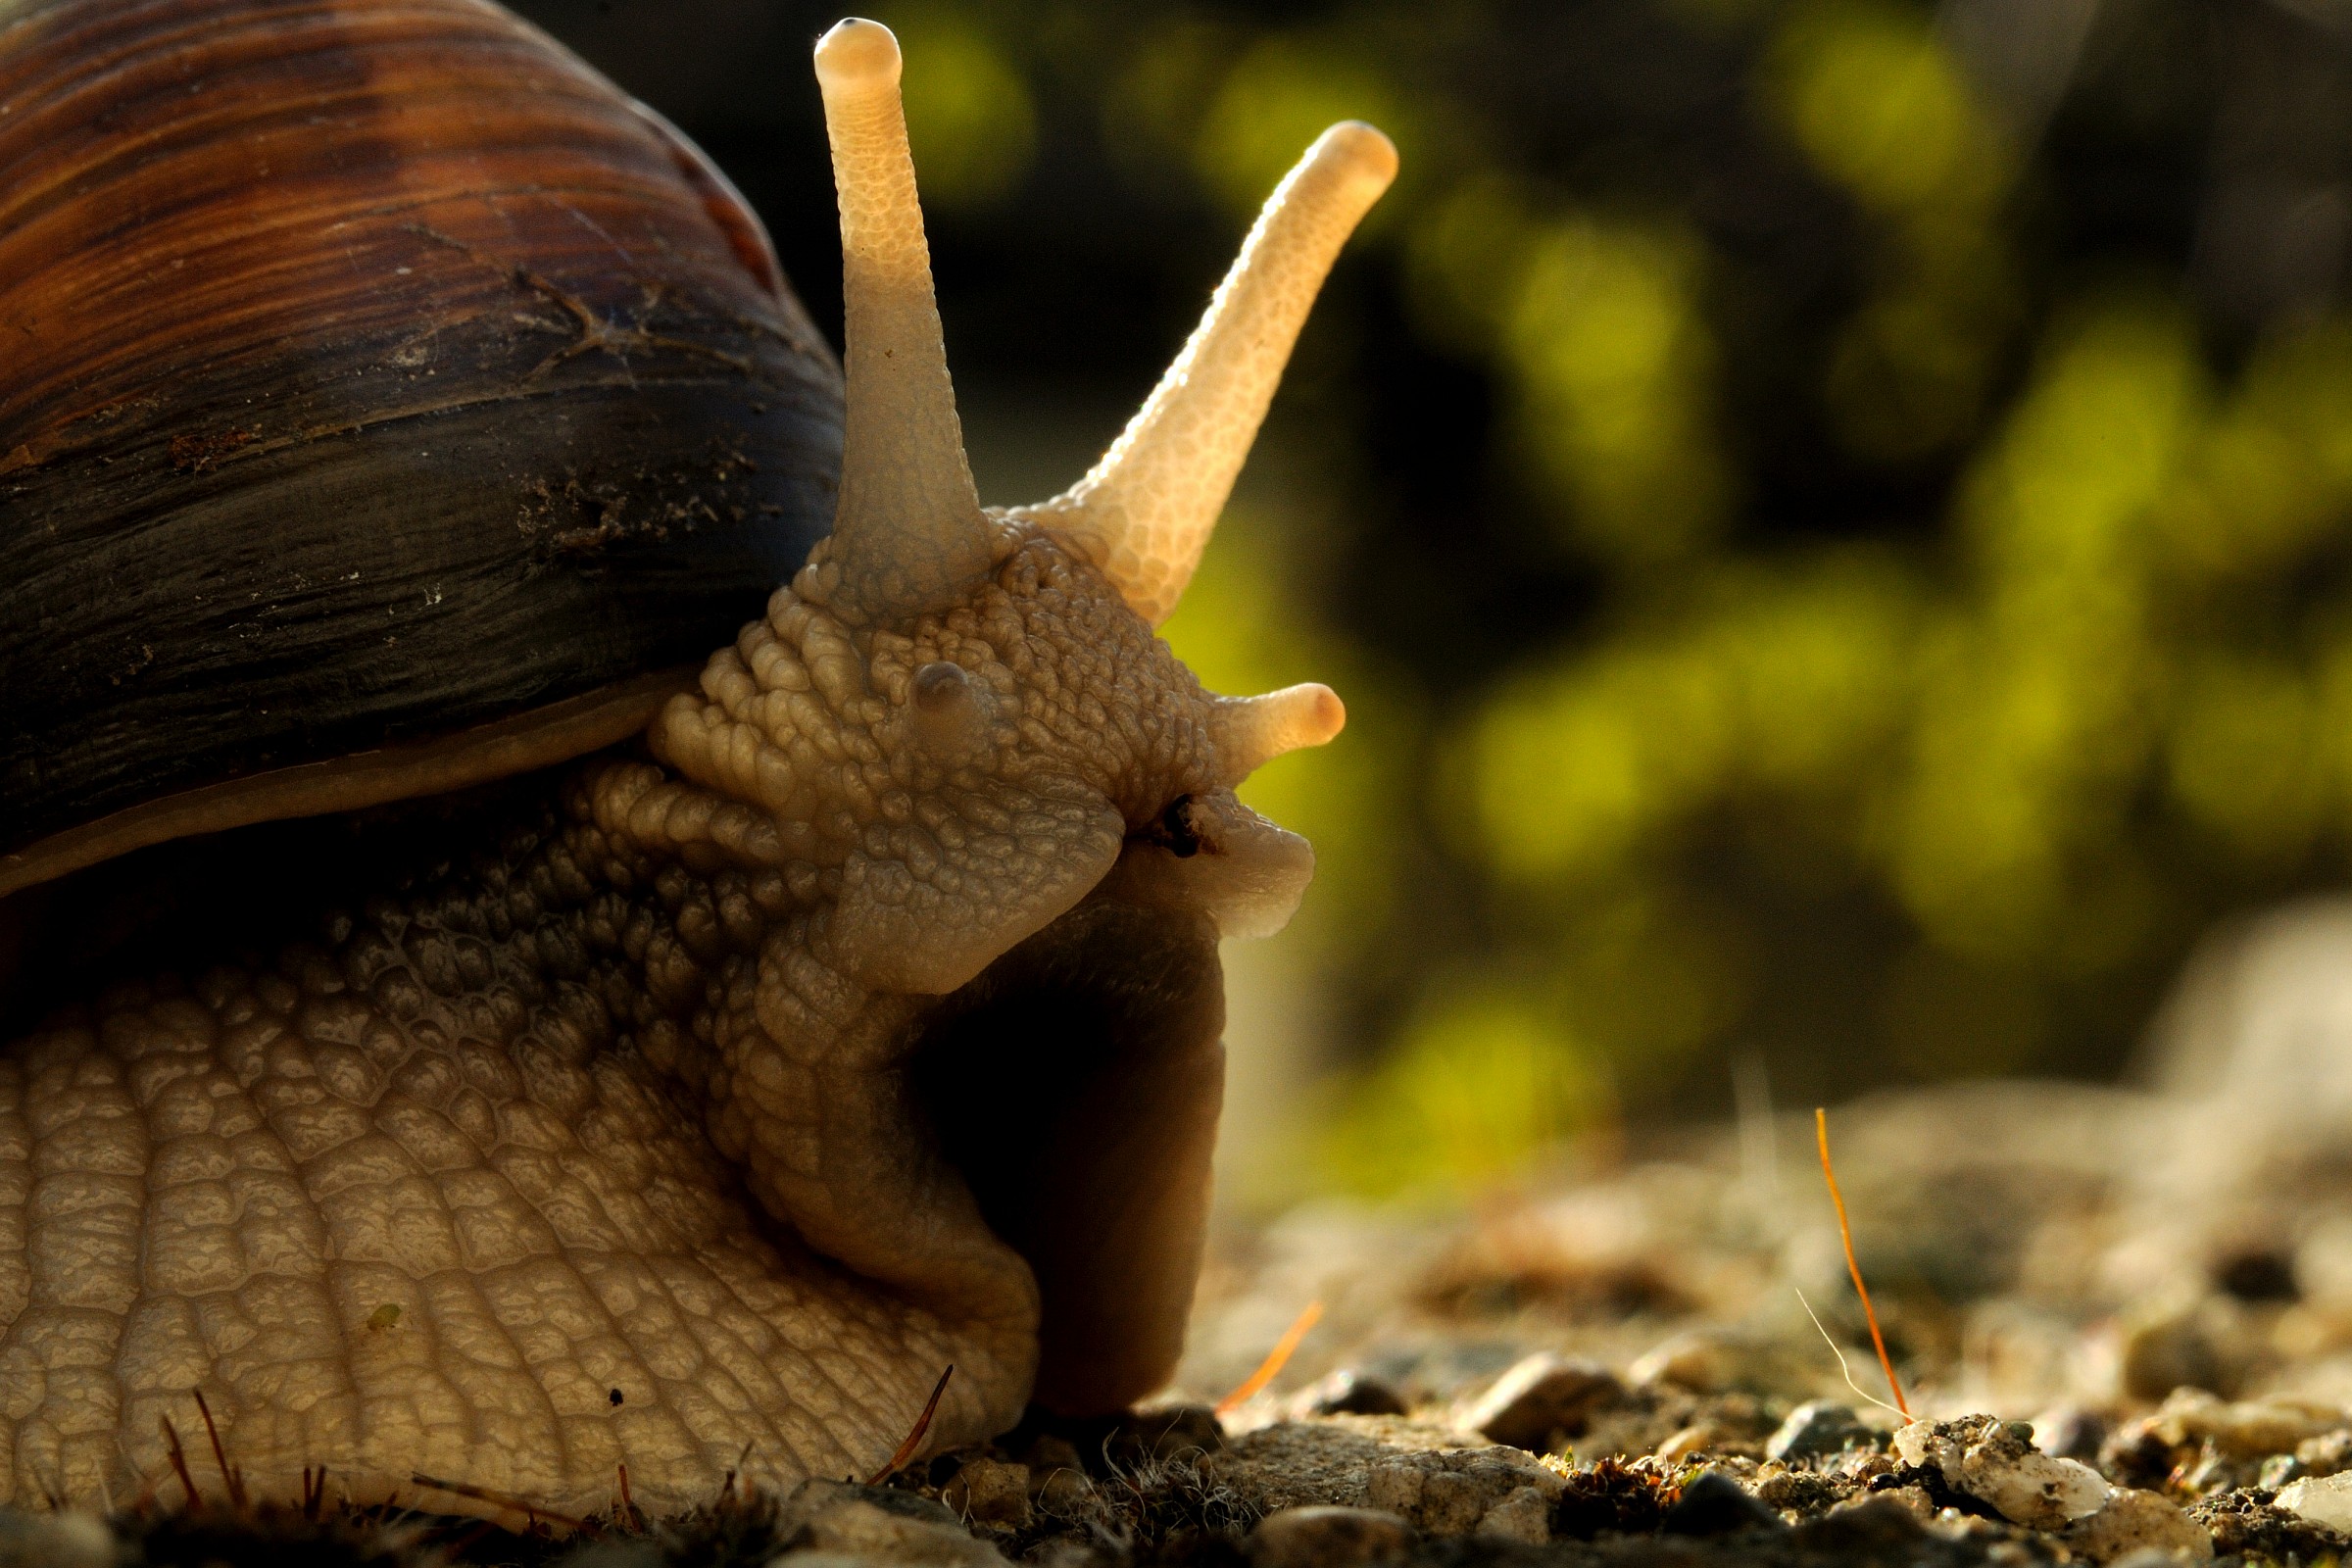 The solemn snail!...